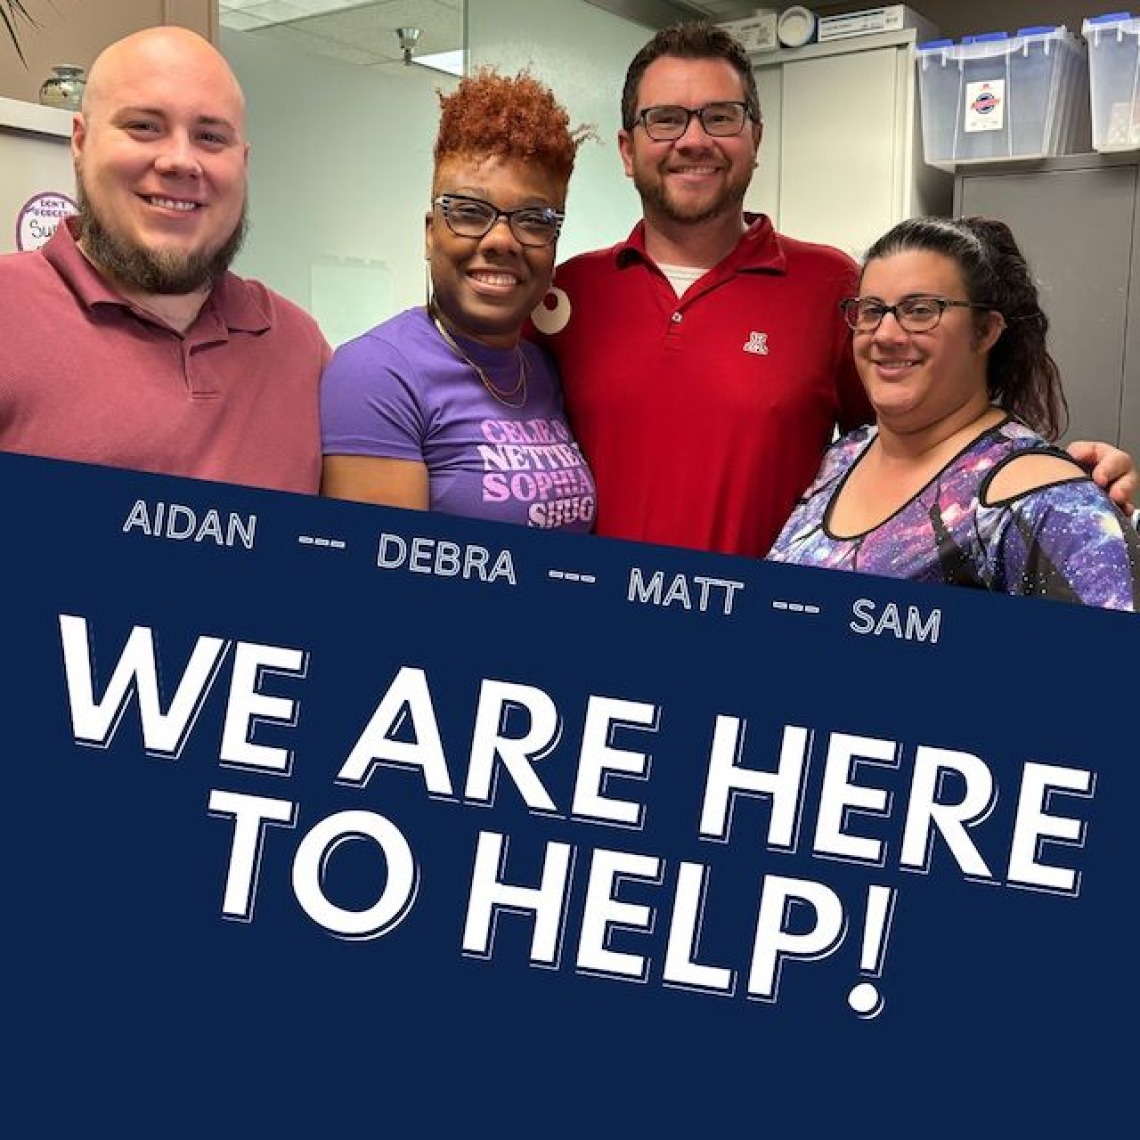 CS AdvisorsAidan, Debra, Matt and Sam are here to help!